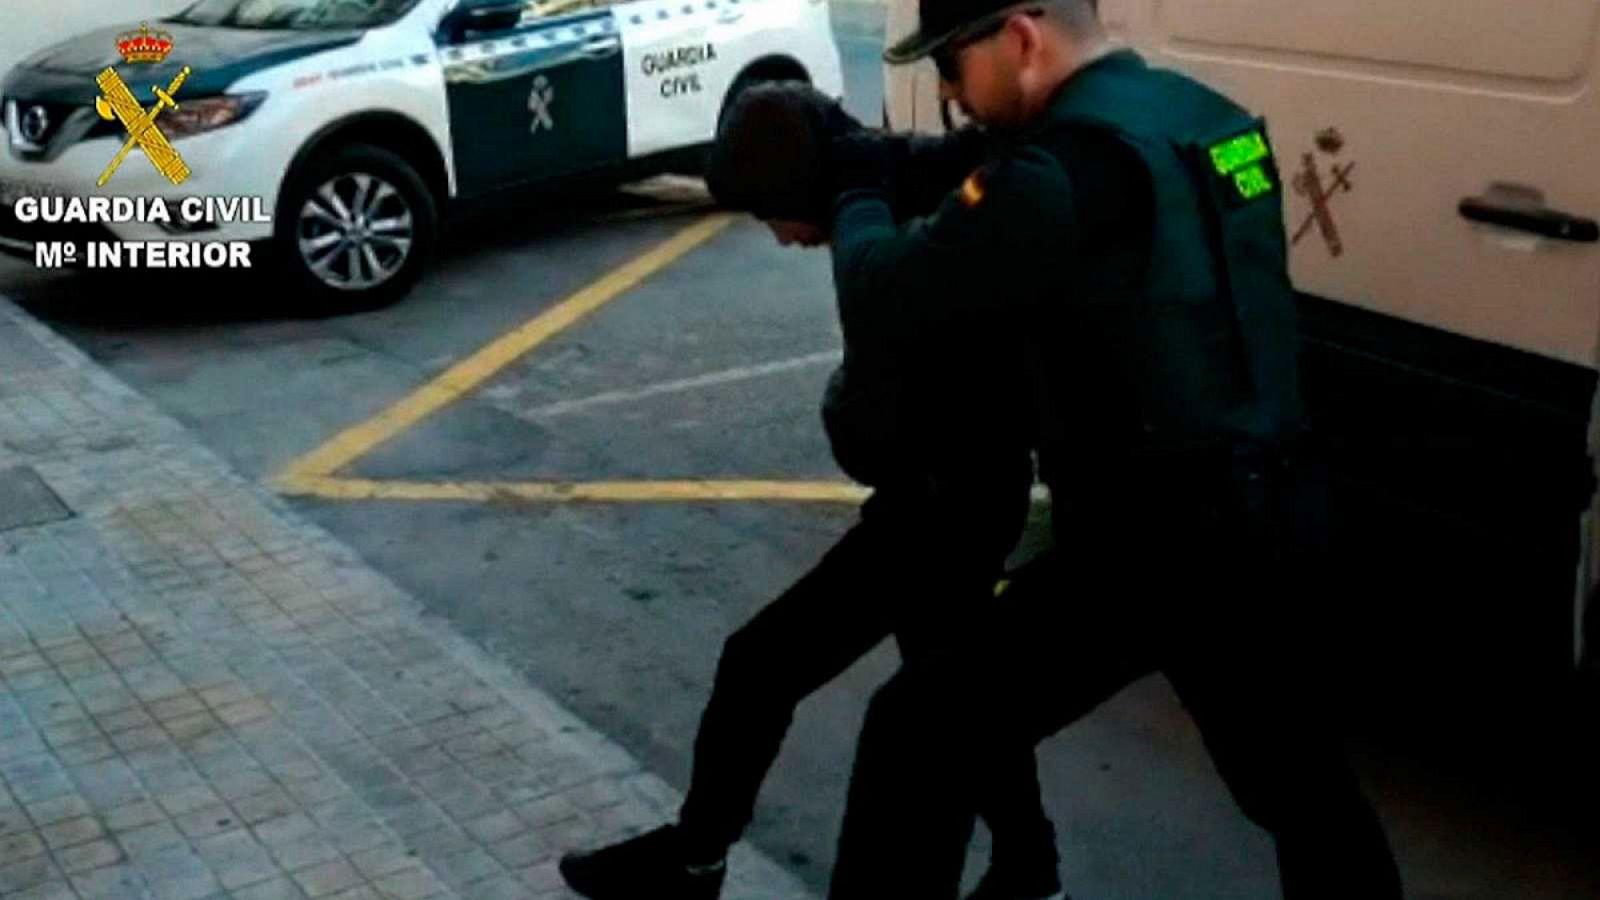 Los detenidos por la violación en grupo en Alicante podrían haber participado en otras agresiones sexuales